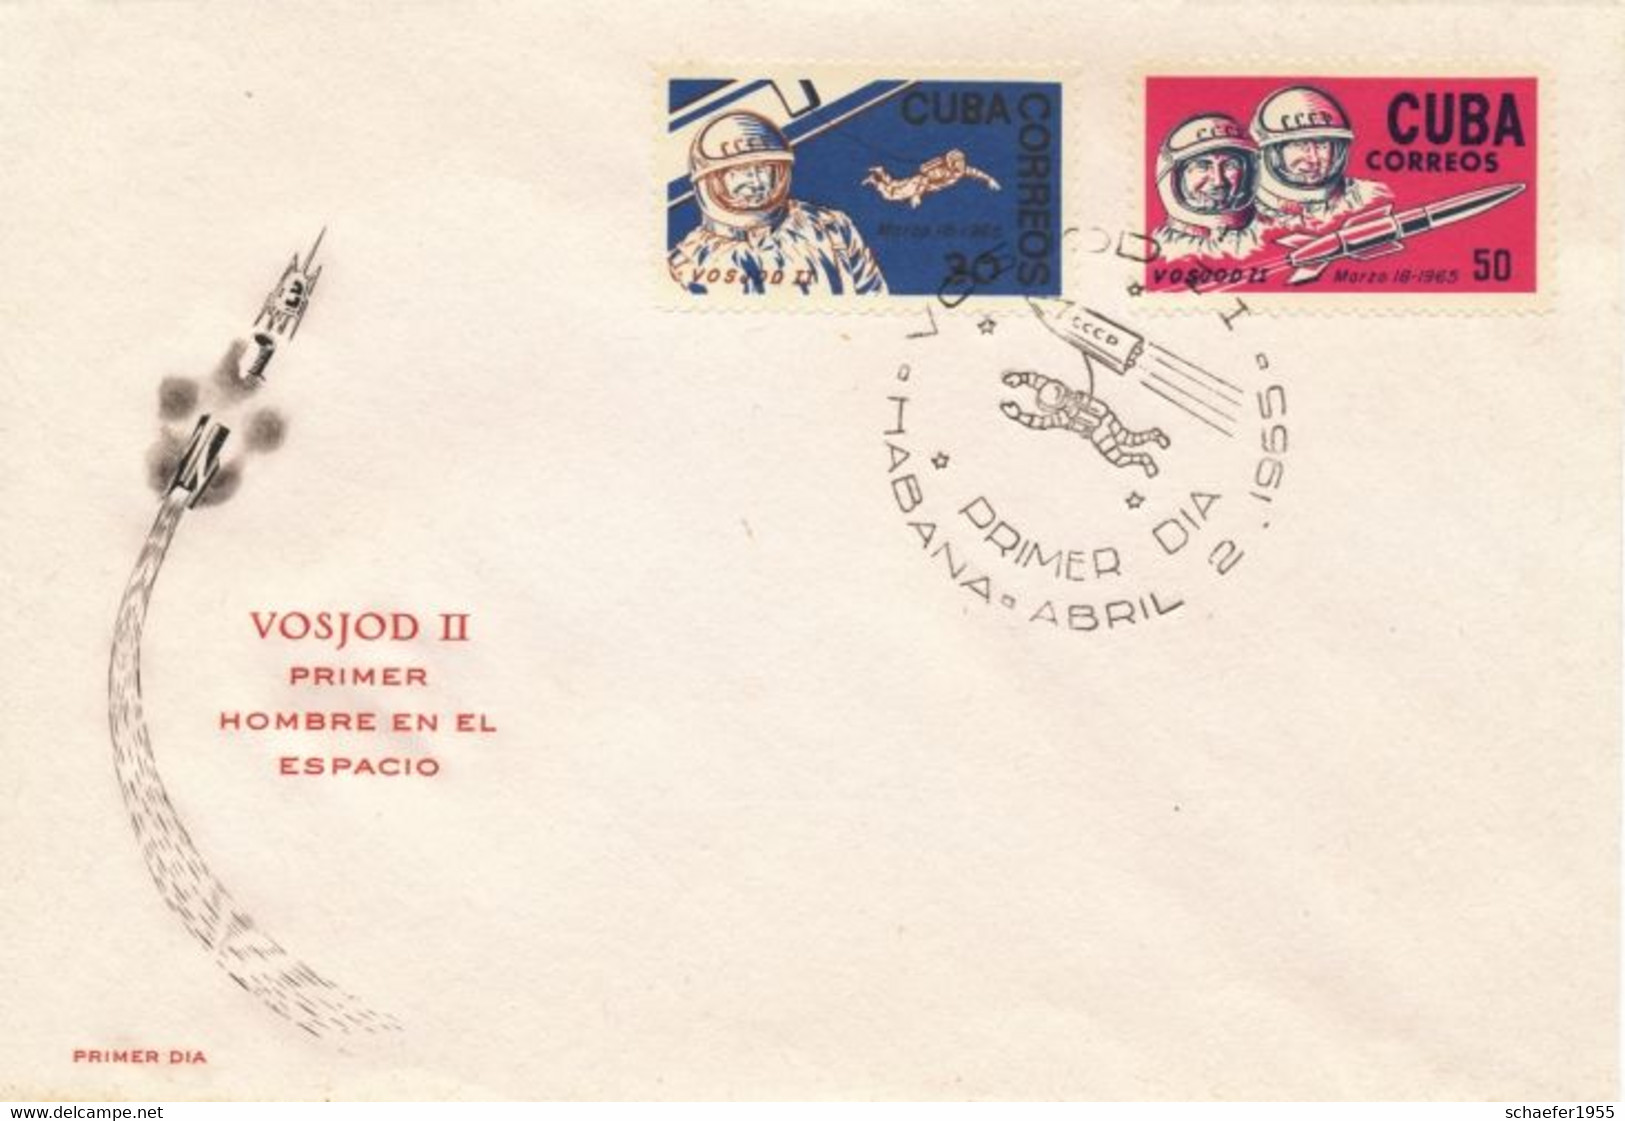 Cuba, Kuba 1965 FDC + Stamps VOSJOD II - Amérique Du Nord